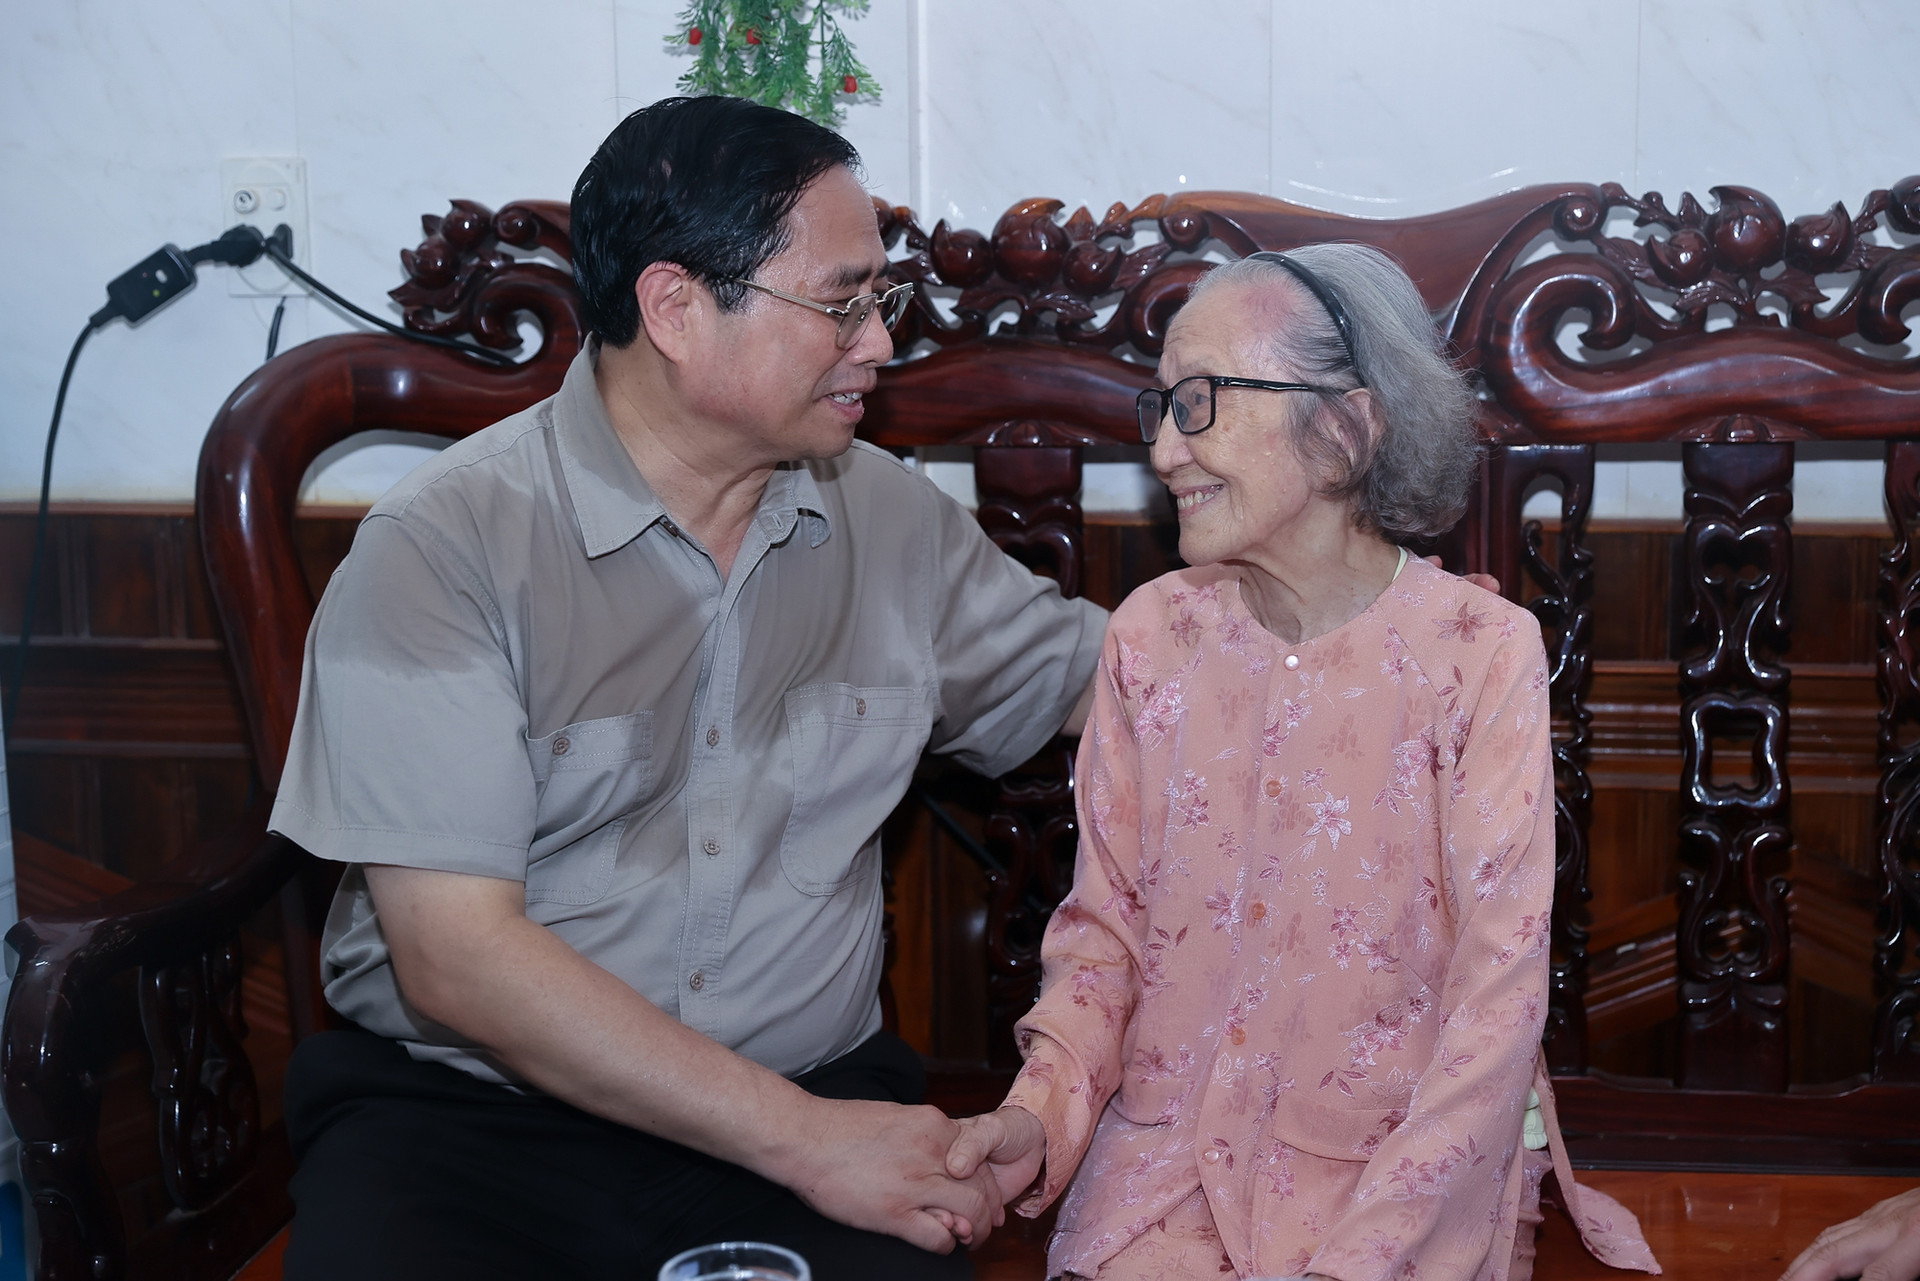 Thủ tướng Phạm Minh Chính dâng hương tưởng nhớ các anh hùng liệt sĩ, tri ân các gia đình chính sách - Ảnh 7.